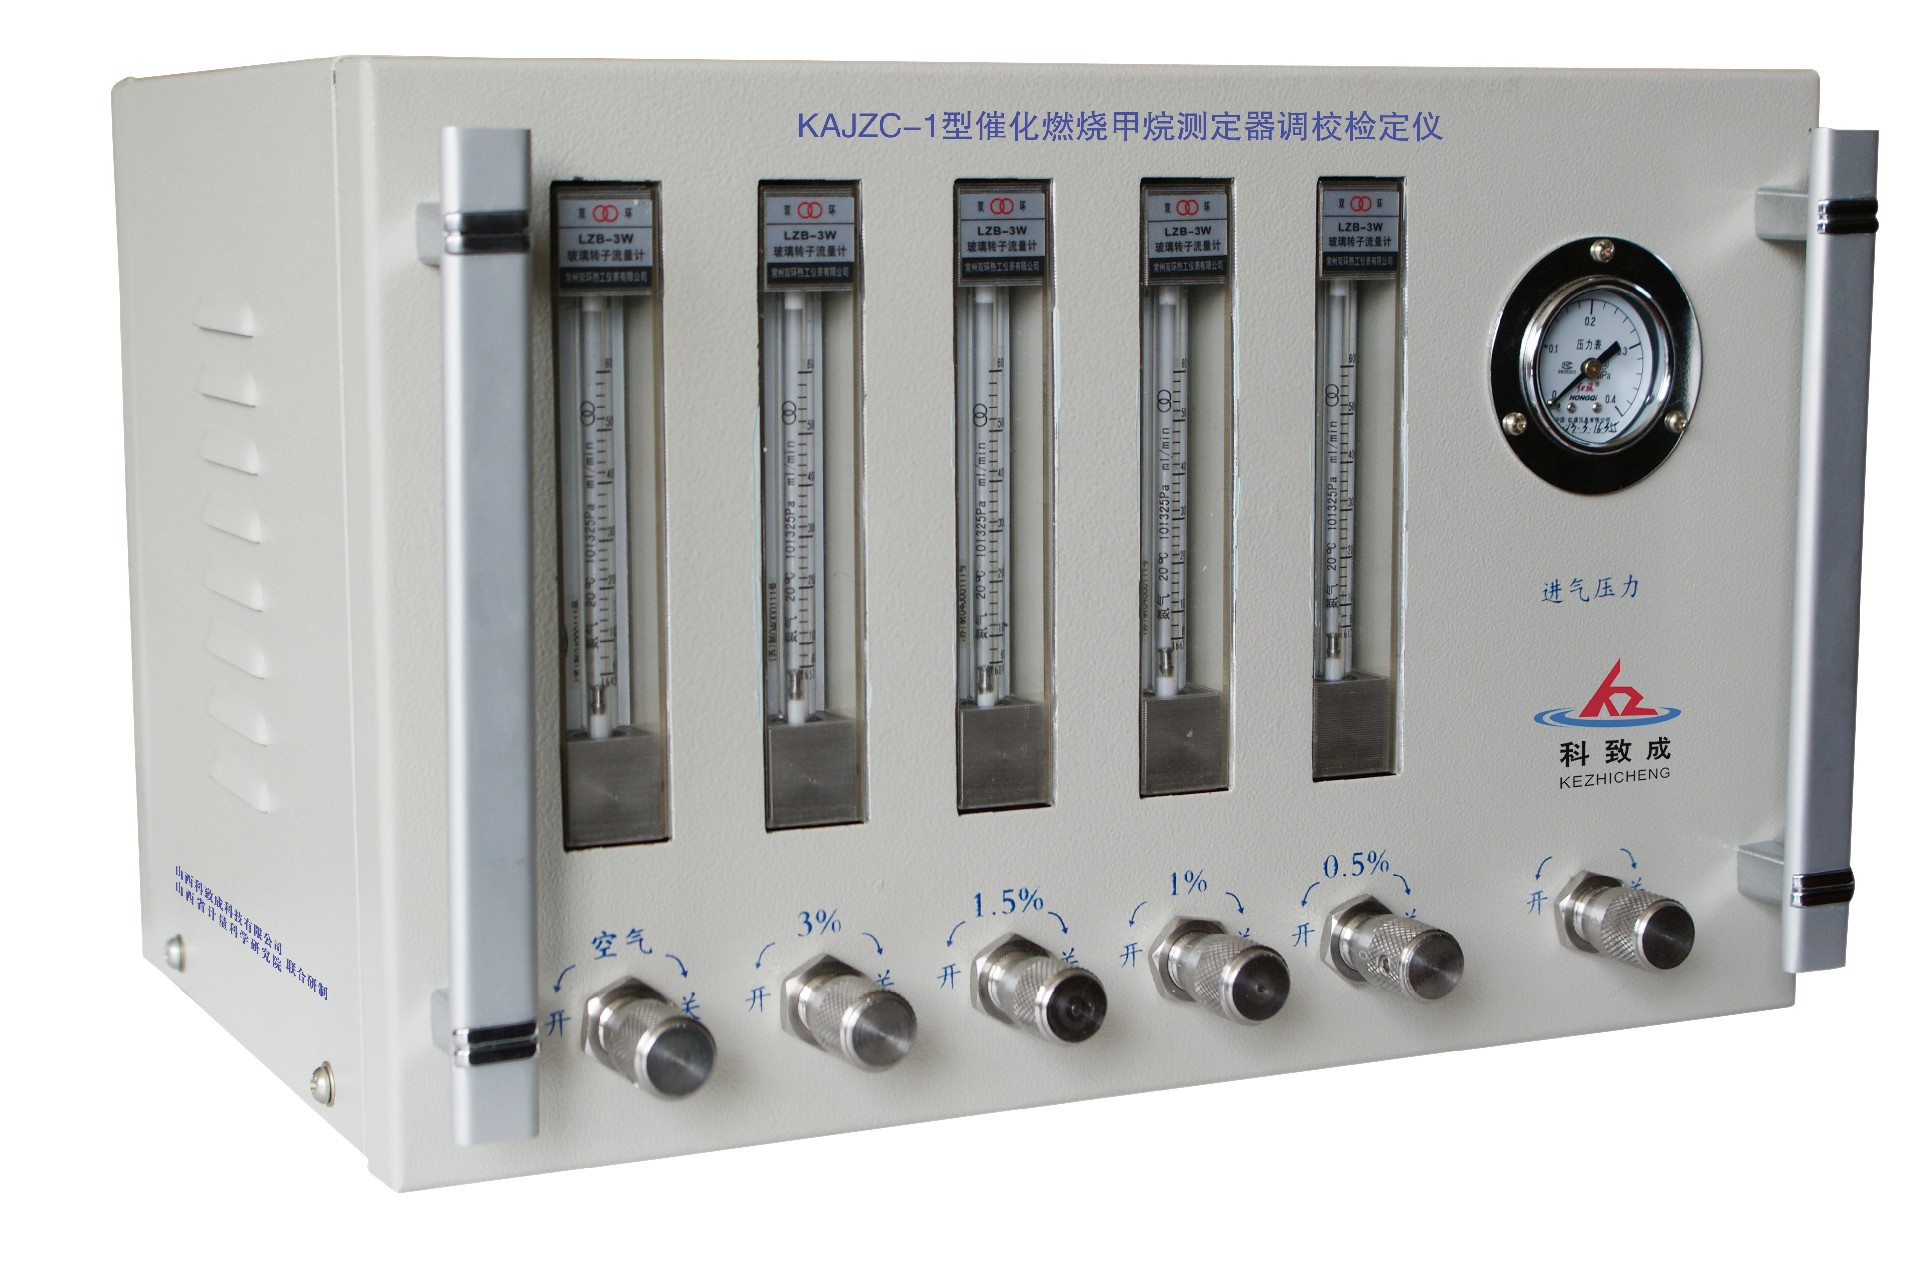 洛阳KAJZC-1型催化燃烧甲烷测定器调校检定仪